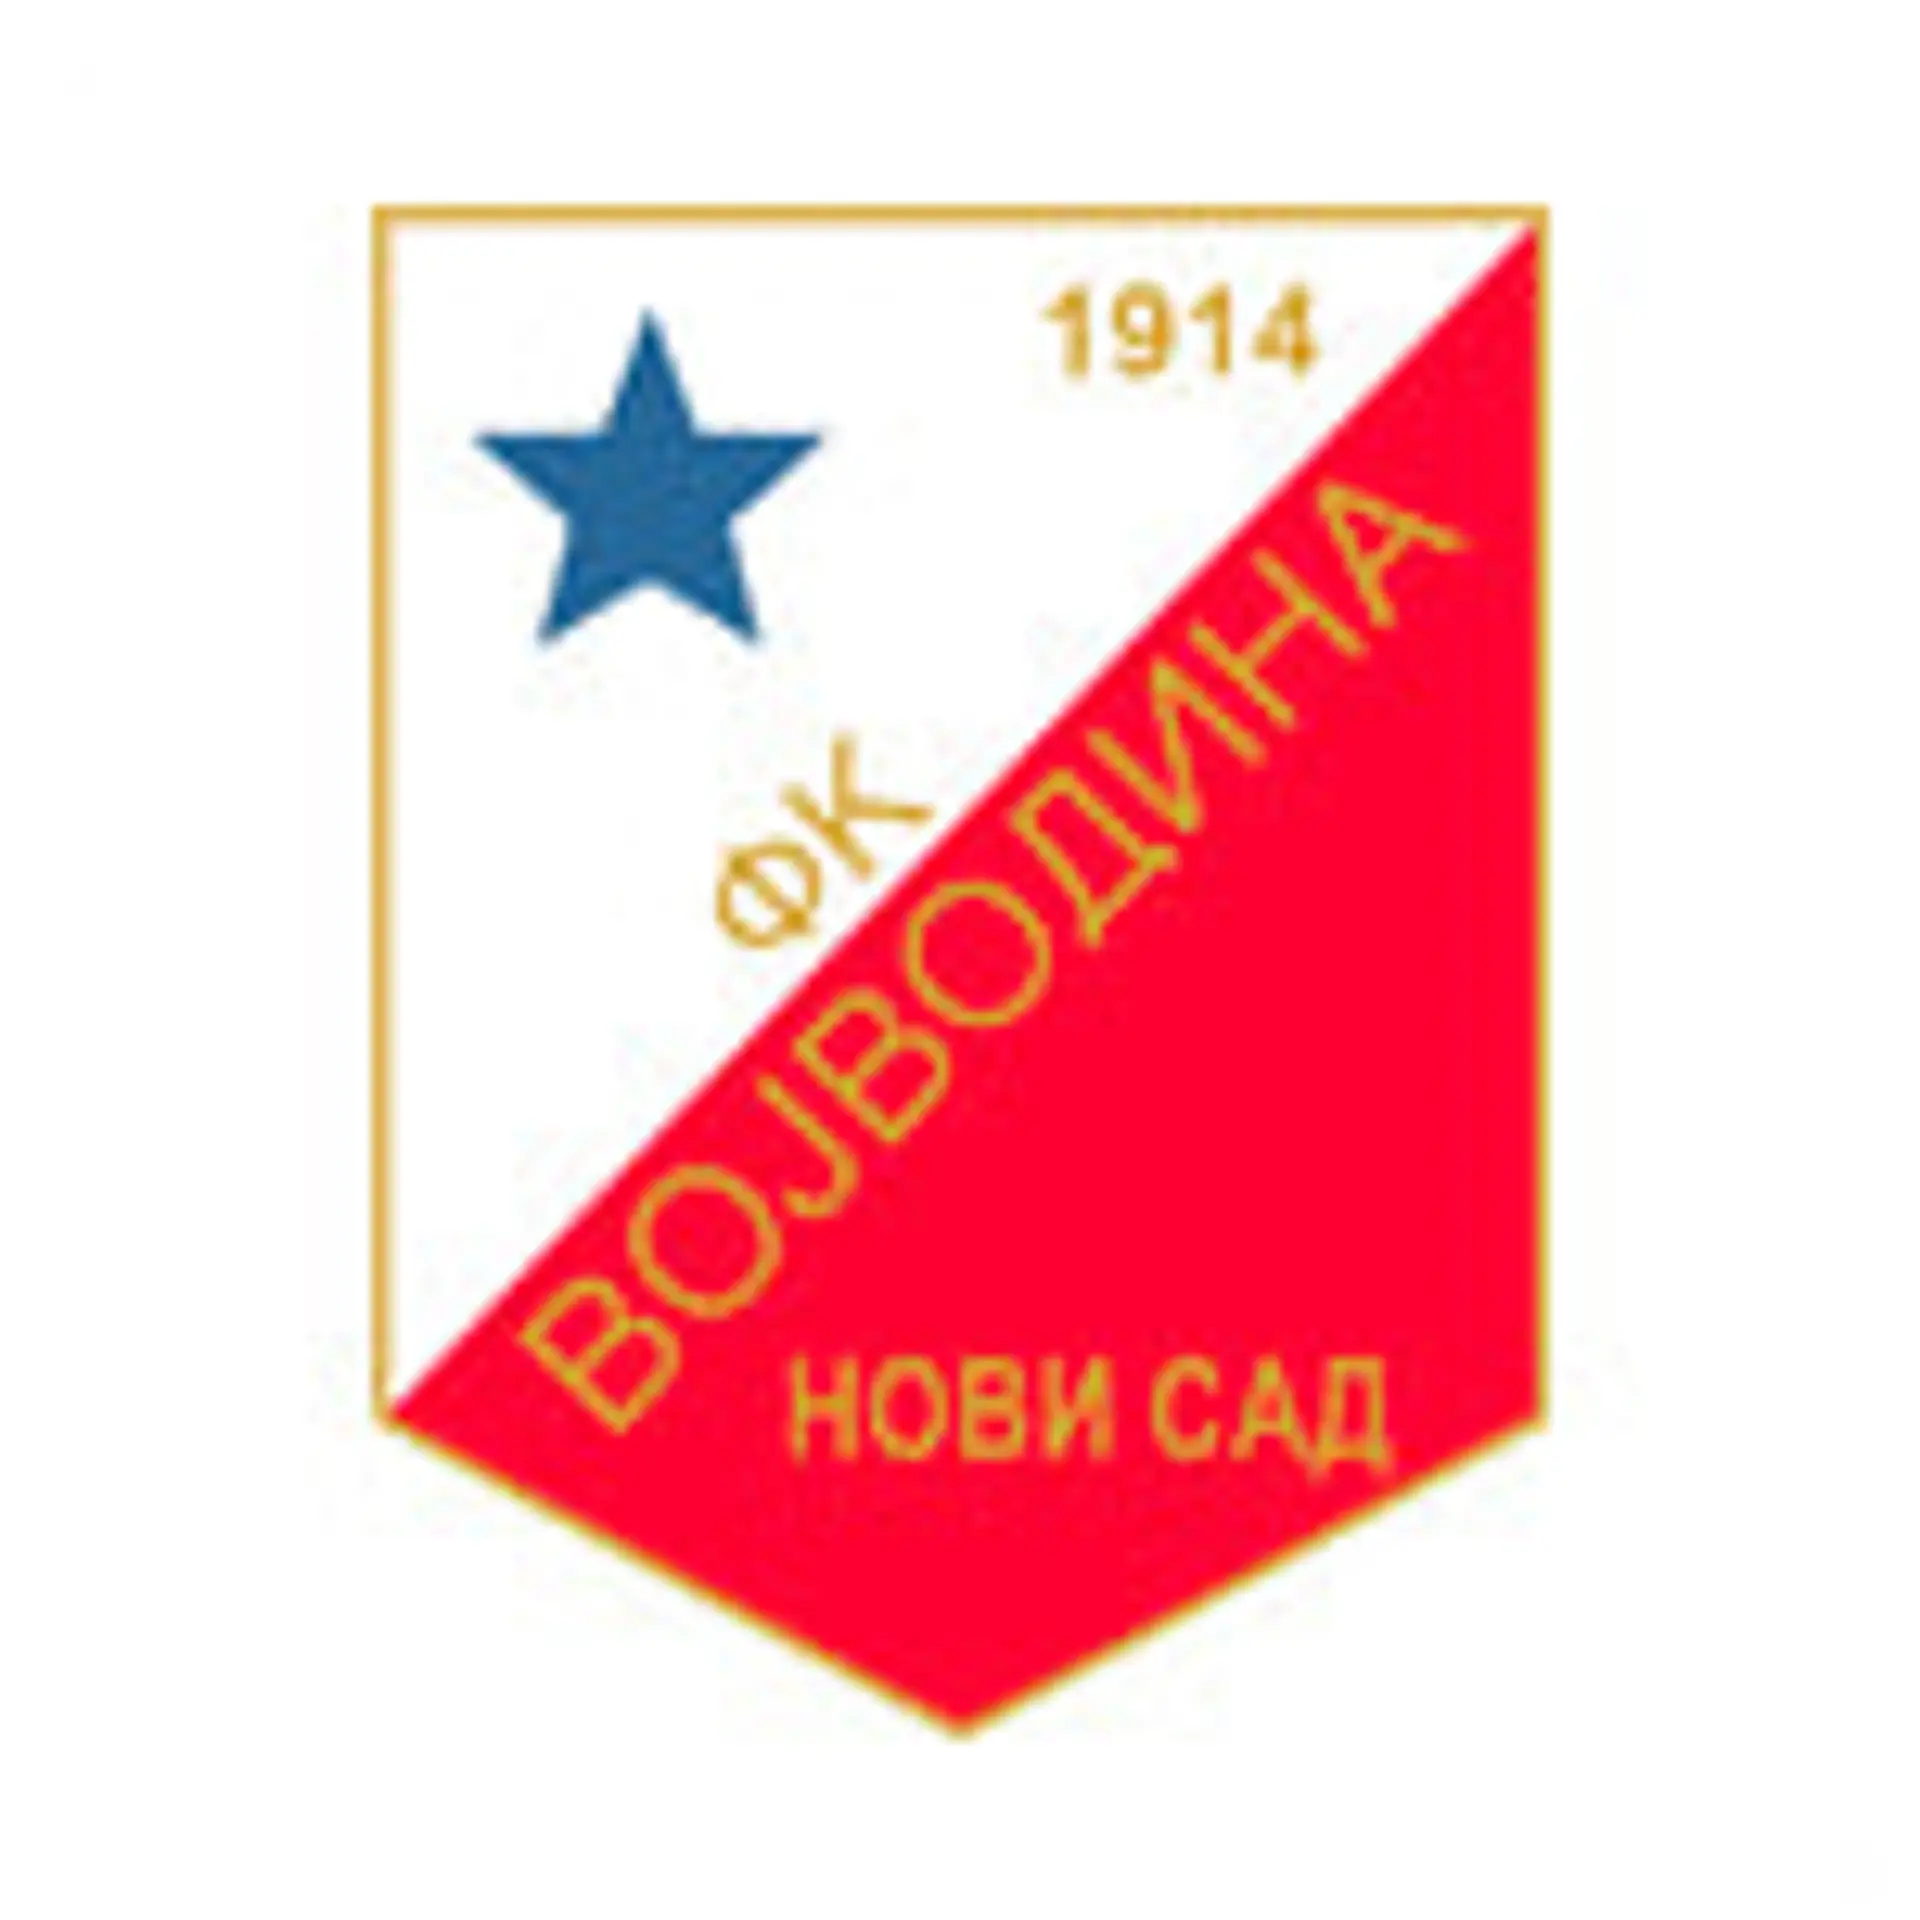 FK Radnicki Nis vs FK Vojvodina: Live Score, Stream and H2H results  12/16/2023. Preview match FK Radnicki Nis vs FK Vojvodina, team, start  time.